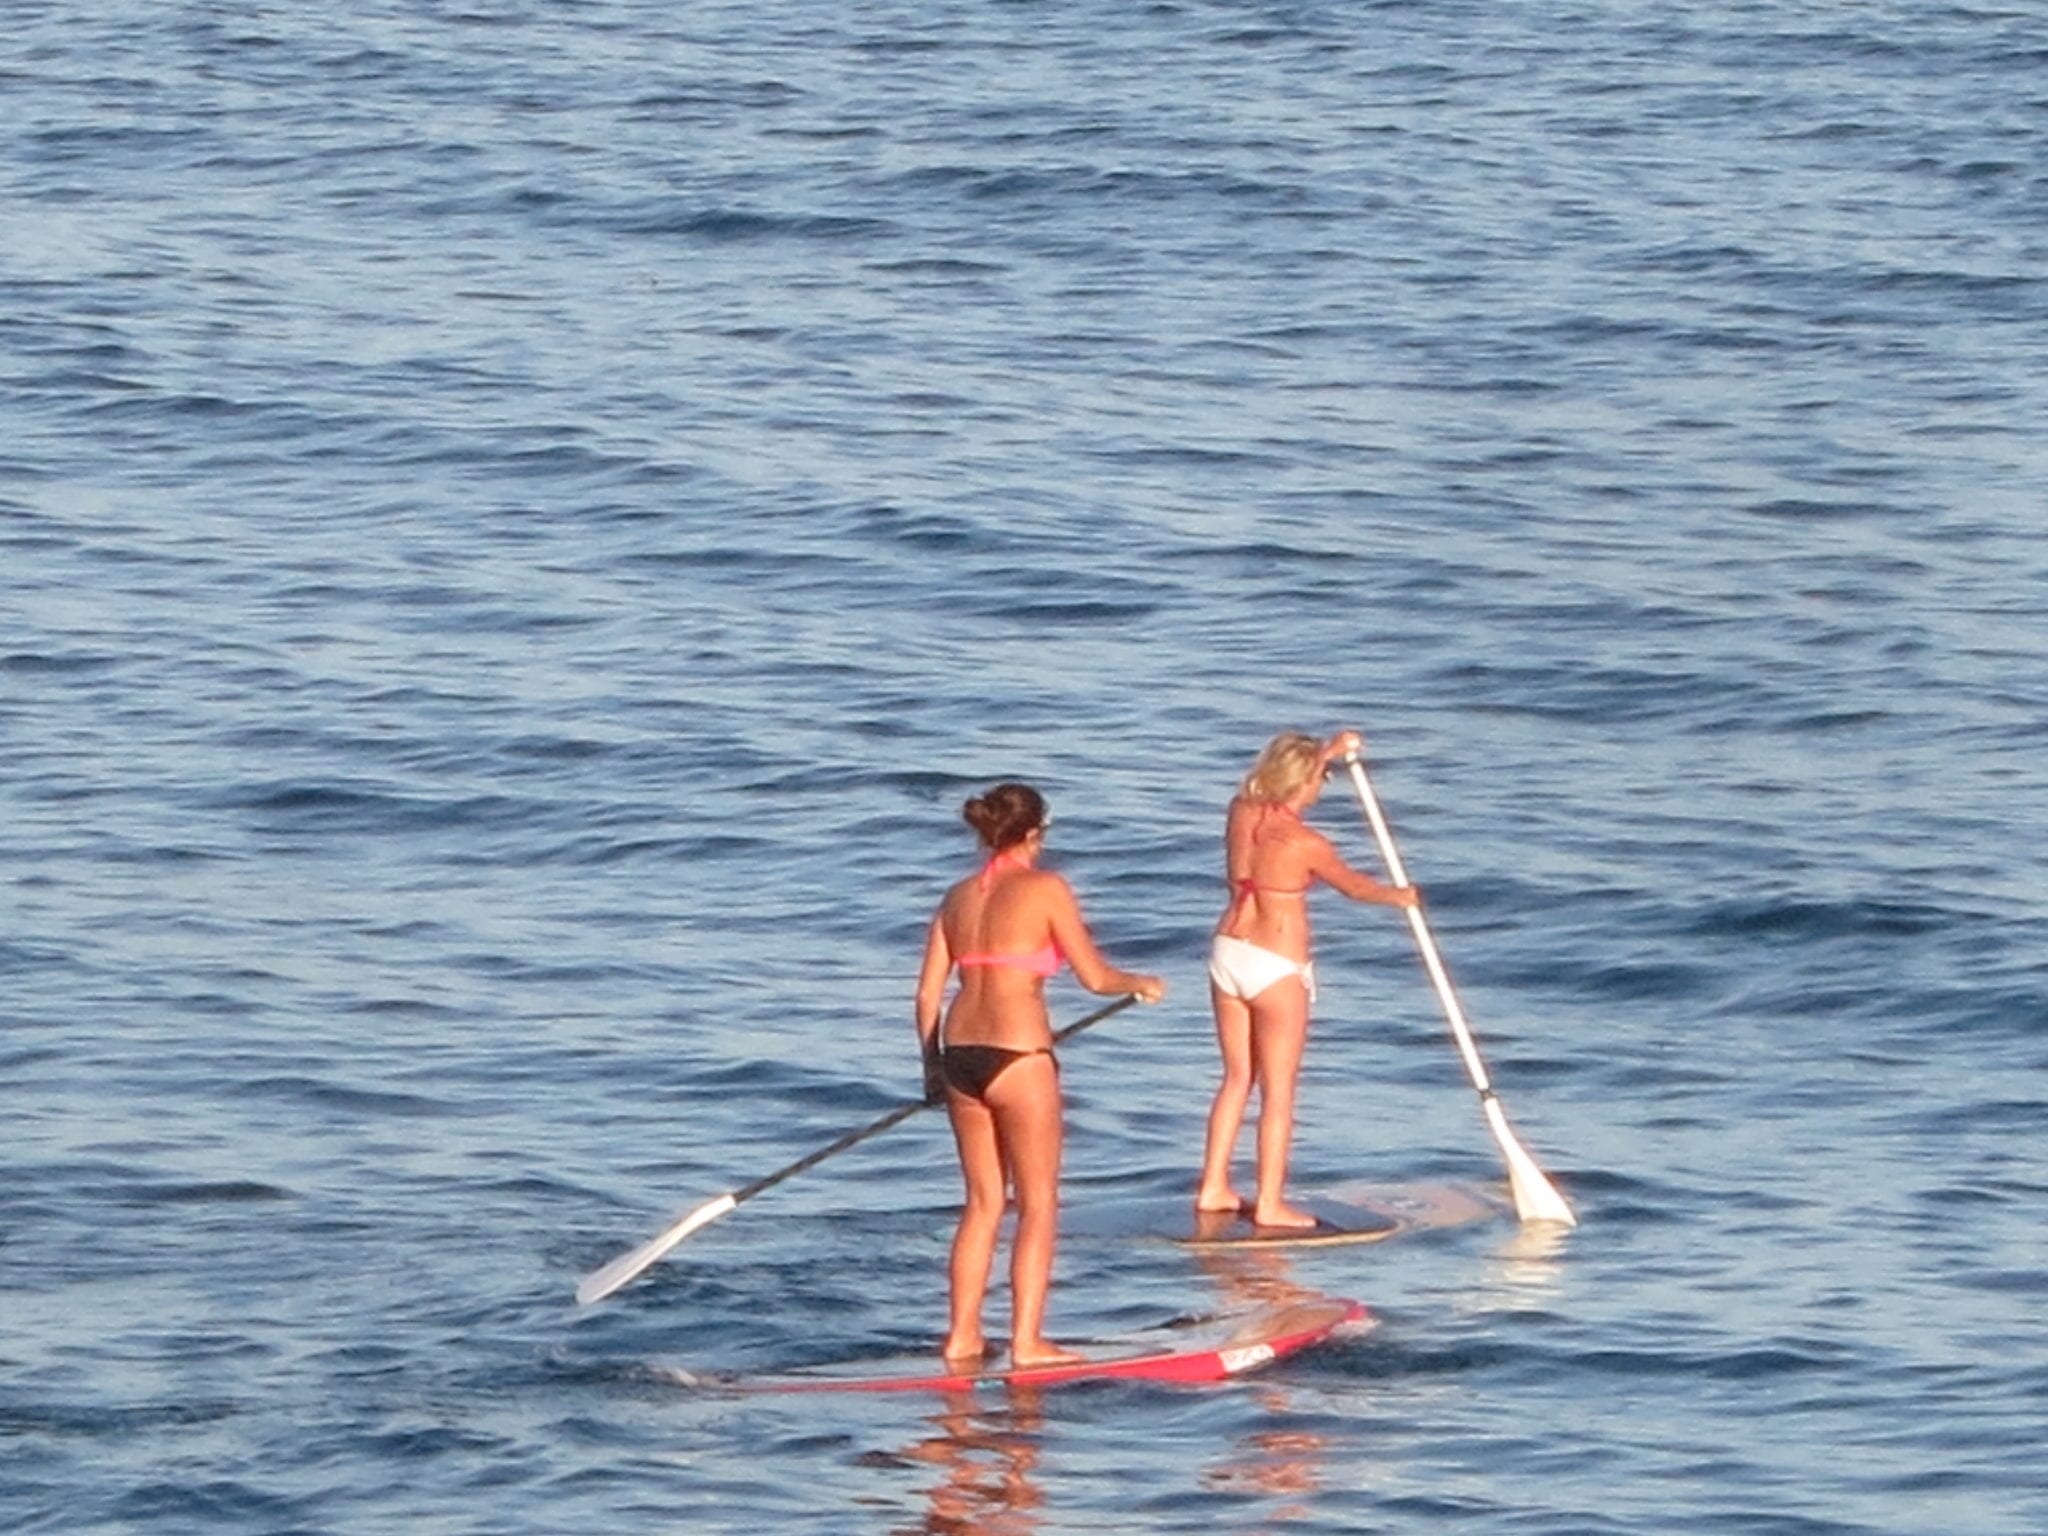 Paddle boarding in Santa Barbara, CA